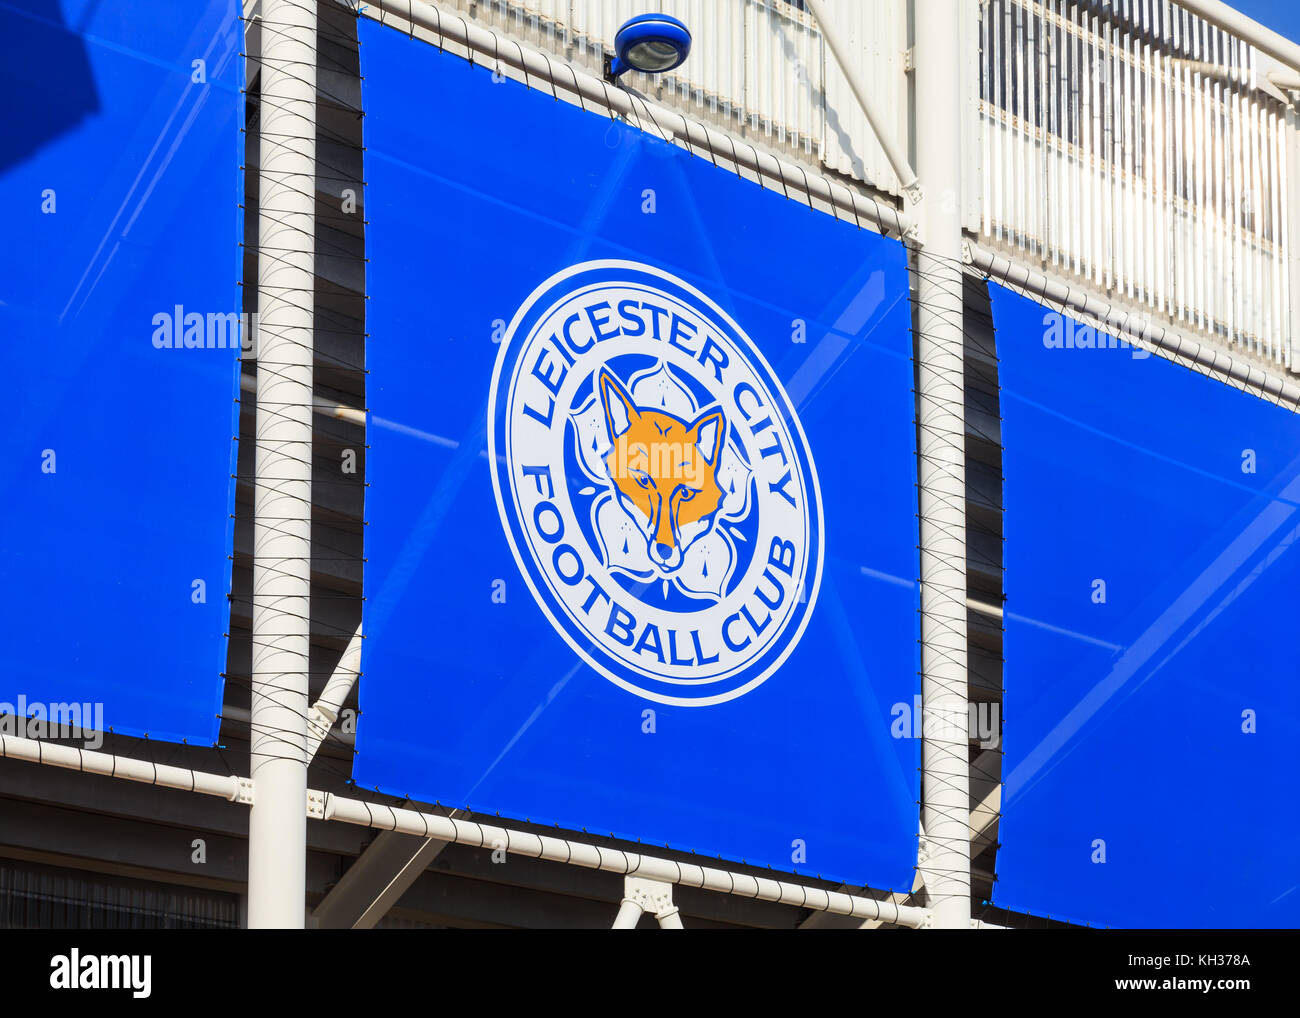 Une fresque de la ville de Leicester orne le badge King Power stadium en Angleterre. Le stade abrite le club de football de Leicester City Banque D'Images